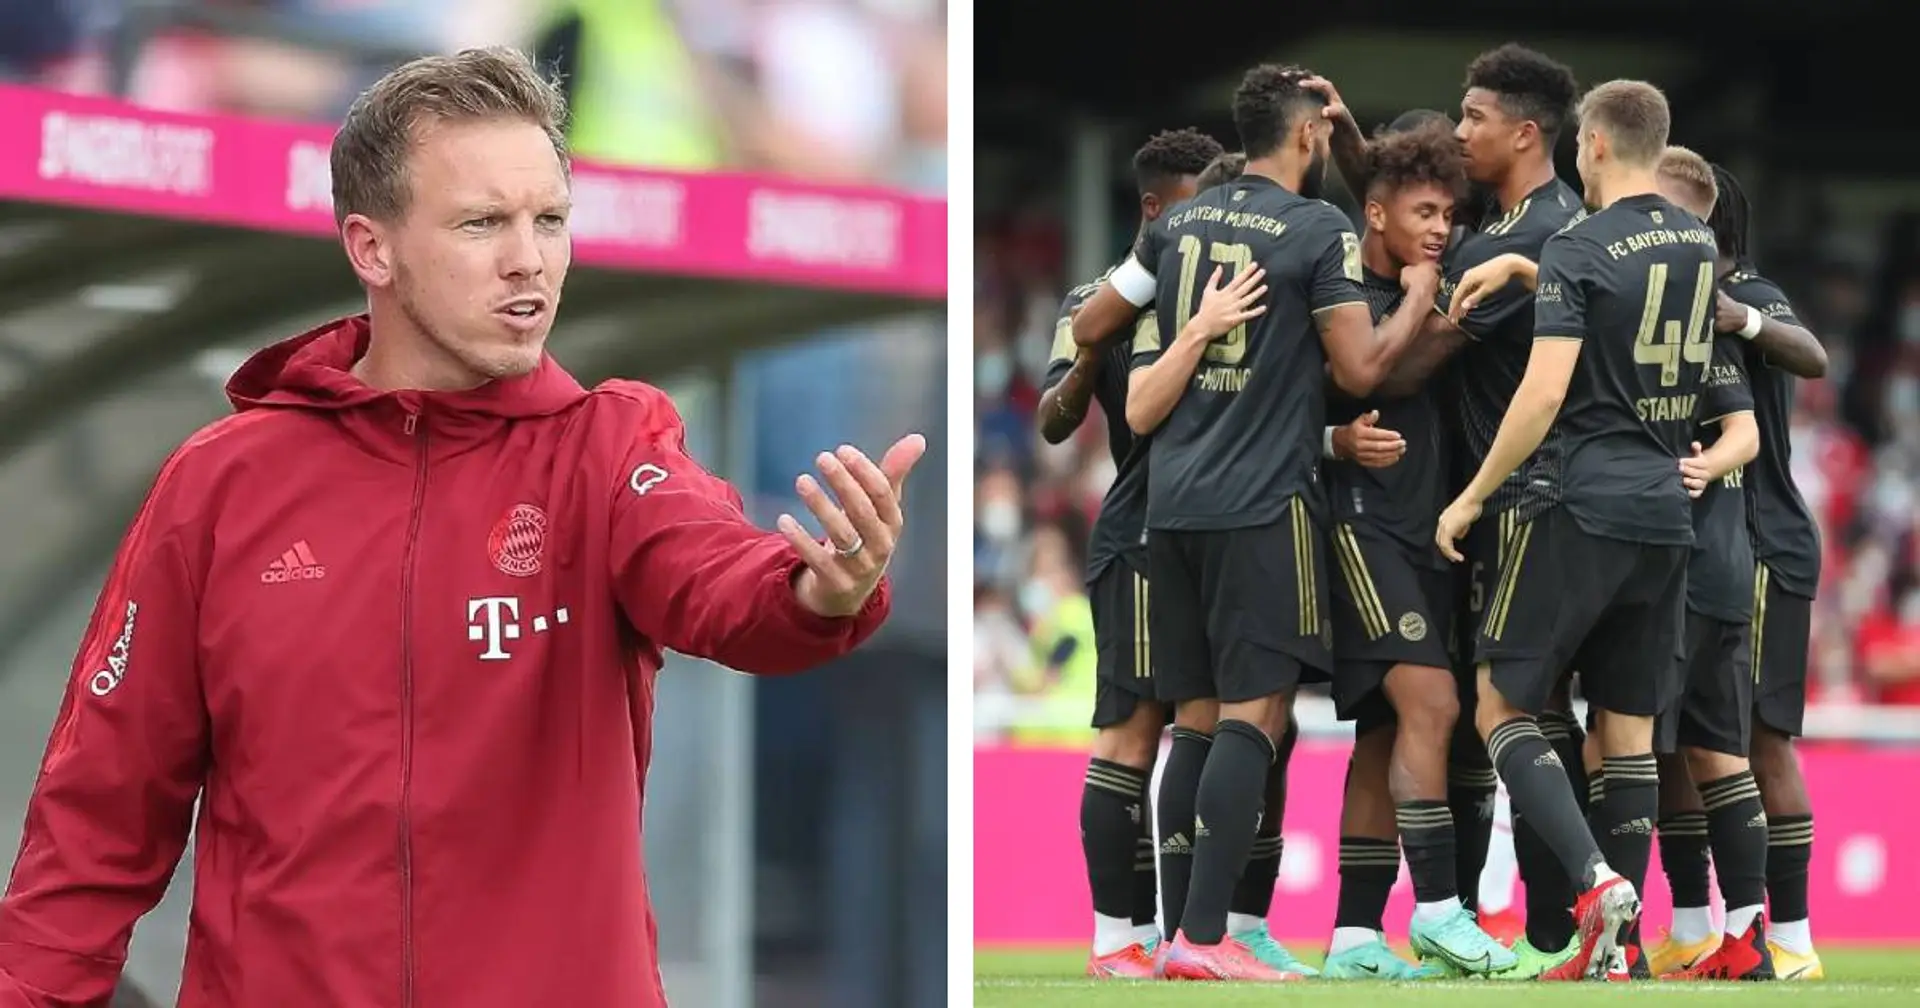 "Es waren drei, vier Jungs dabei, die es sehr gut gemacht haben": Nagelsmann hebt einige Talente nach Köln-Spiel hervor